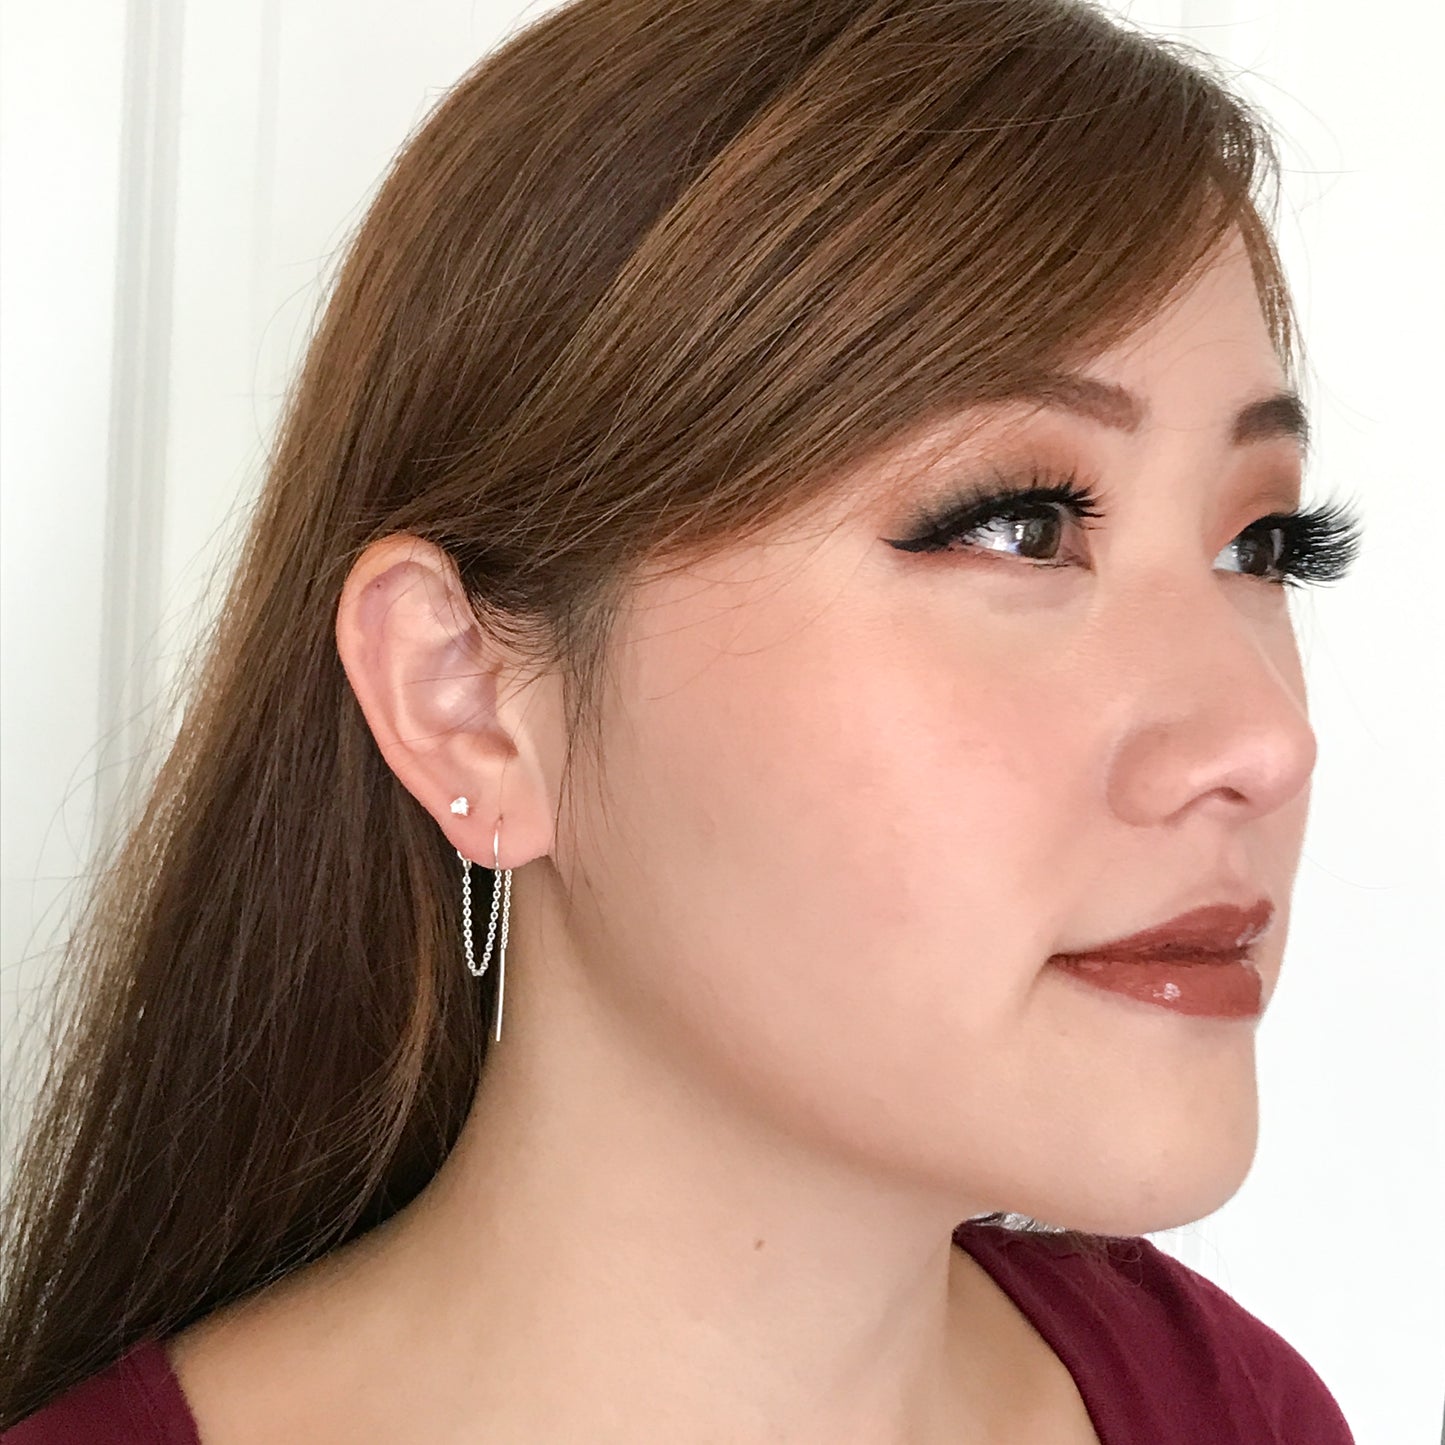 Earrings for Double Piercings - Cubic Zirconia Earrings